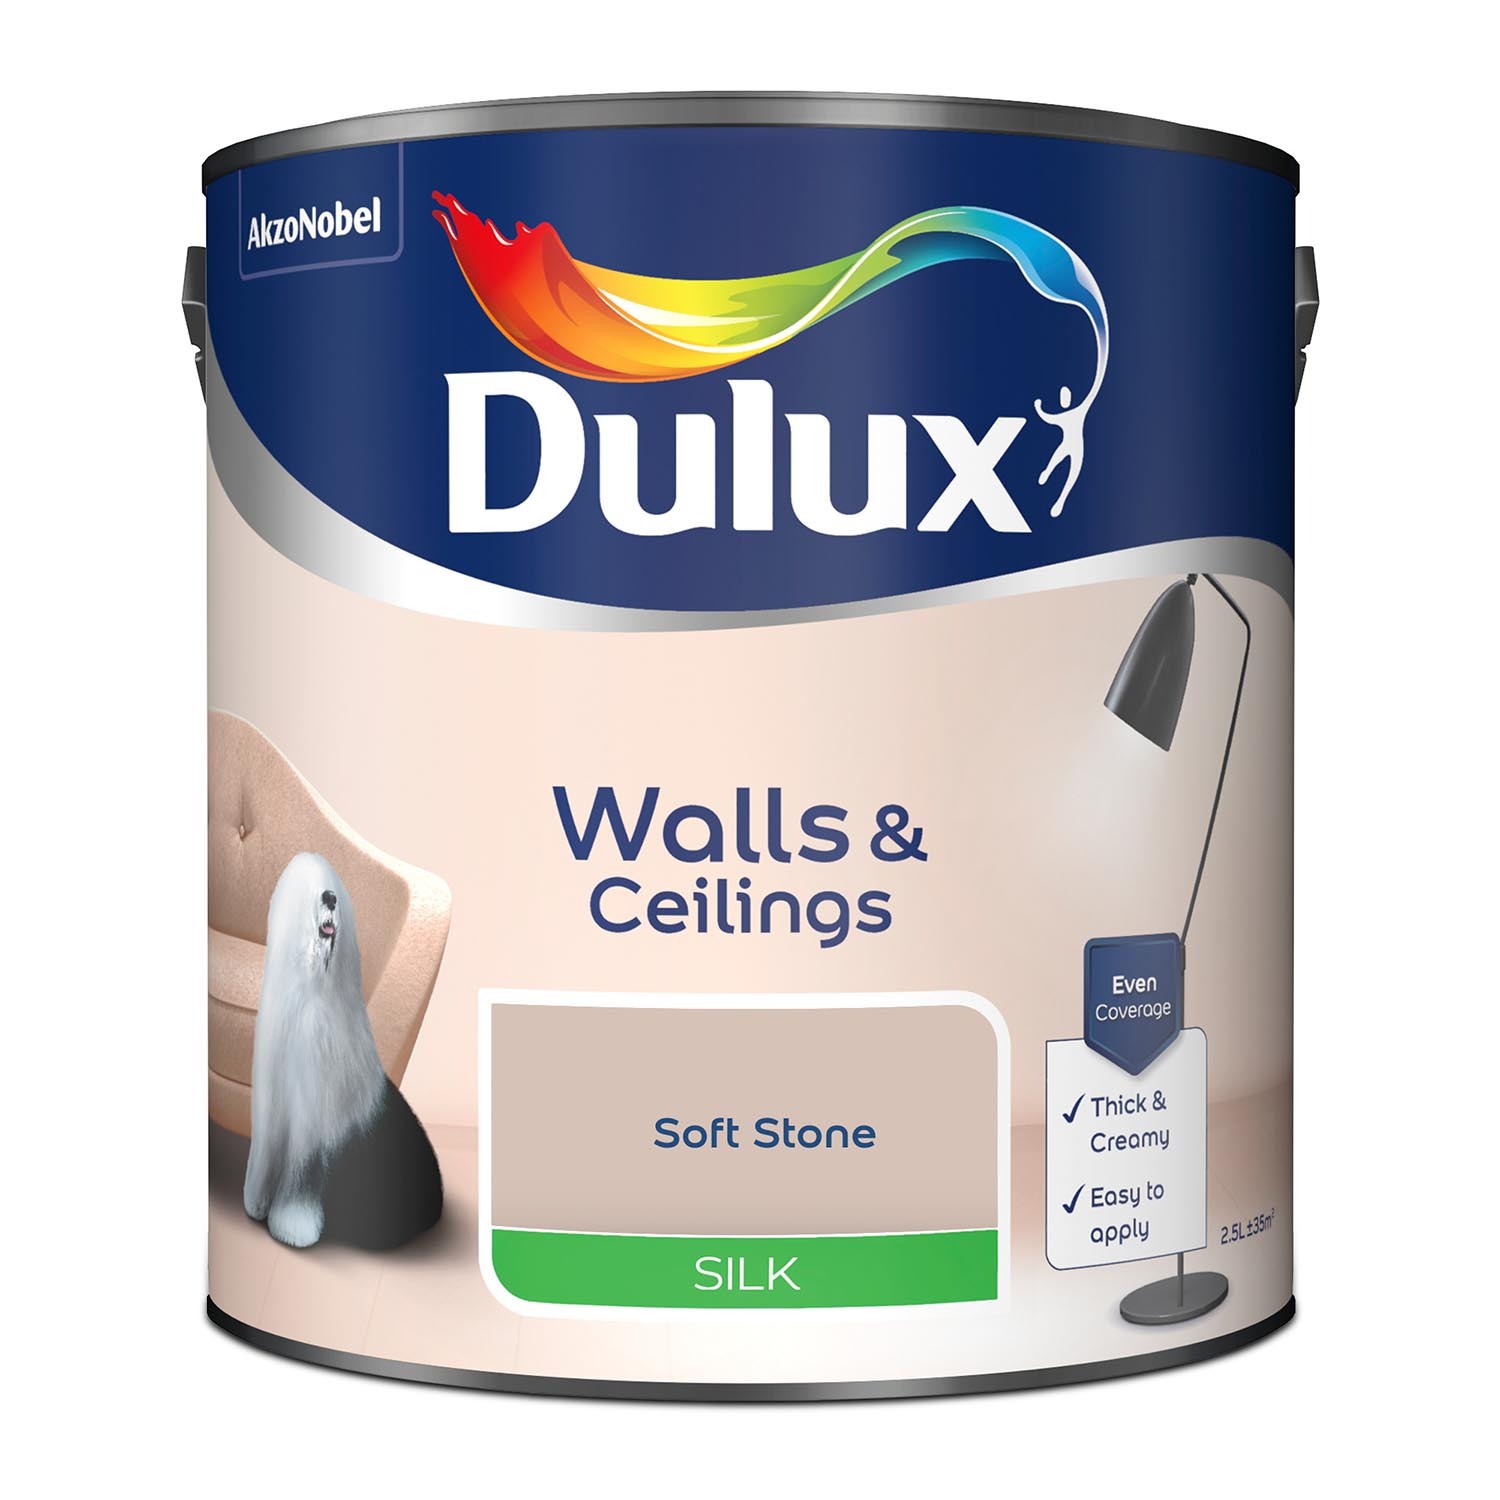 Dulux Walls & Ceilings Soft Stone Silk Emulsion Paint 2.5L Image 2